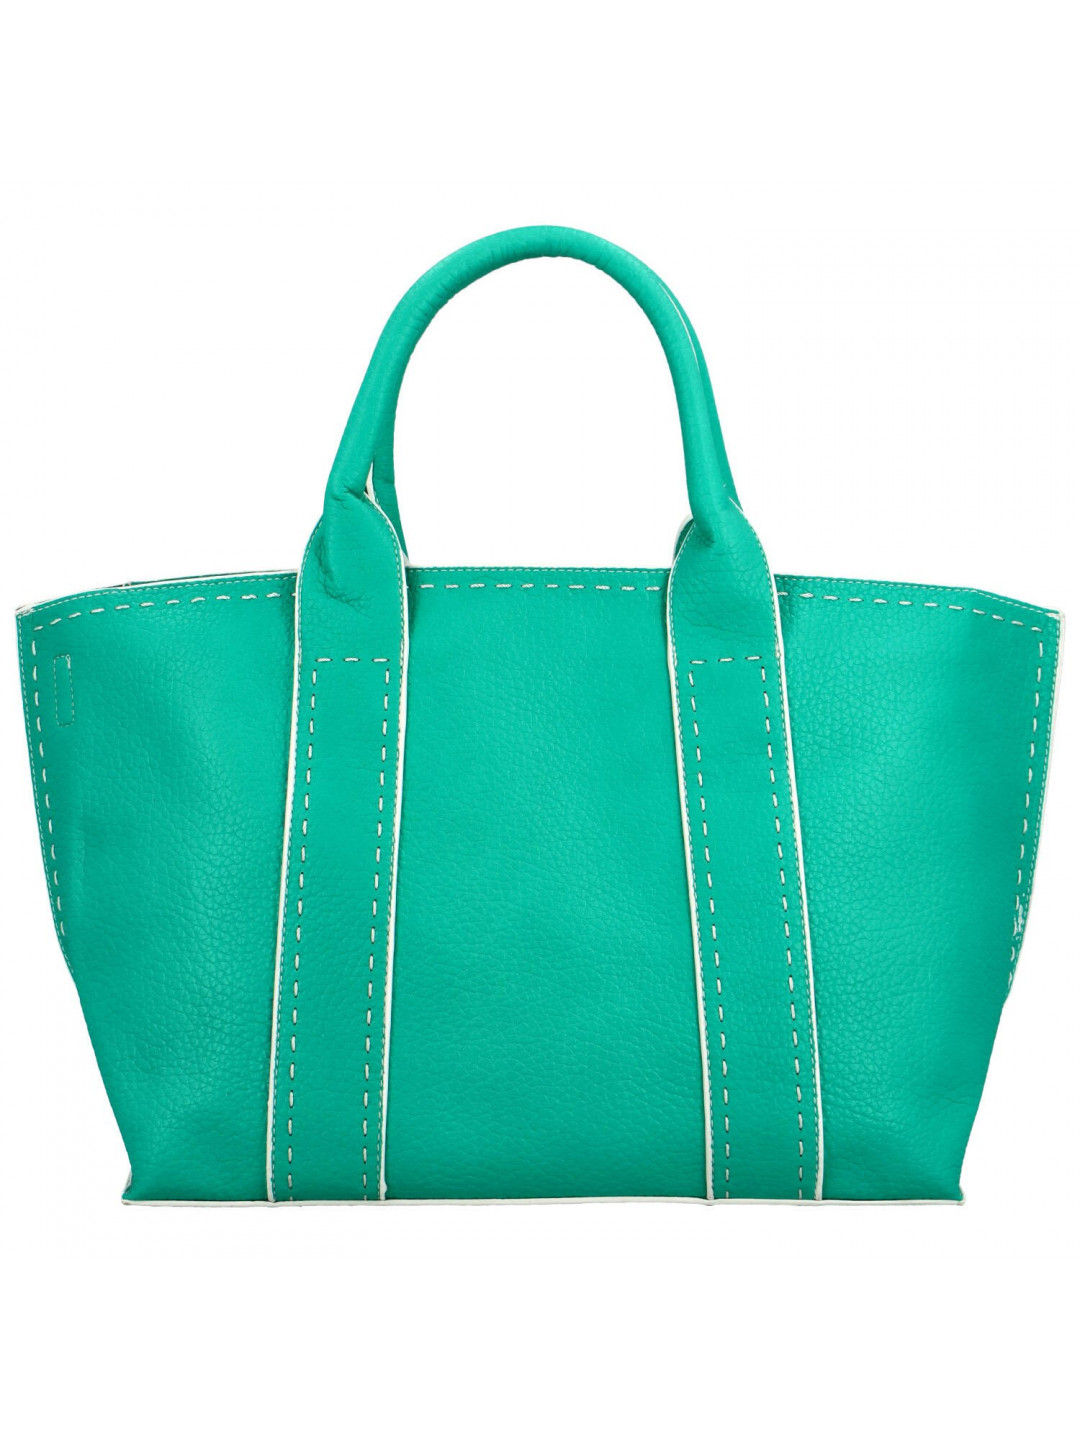 Dámská kabelka do ruky mentolově zelená – Potri Periss